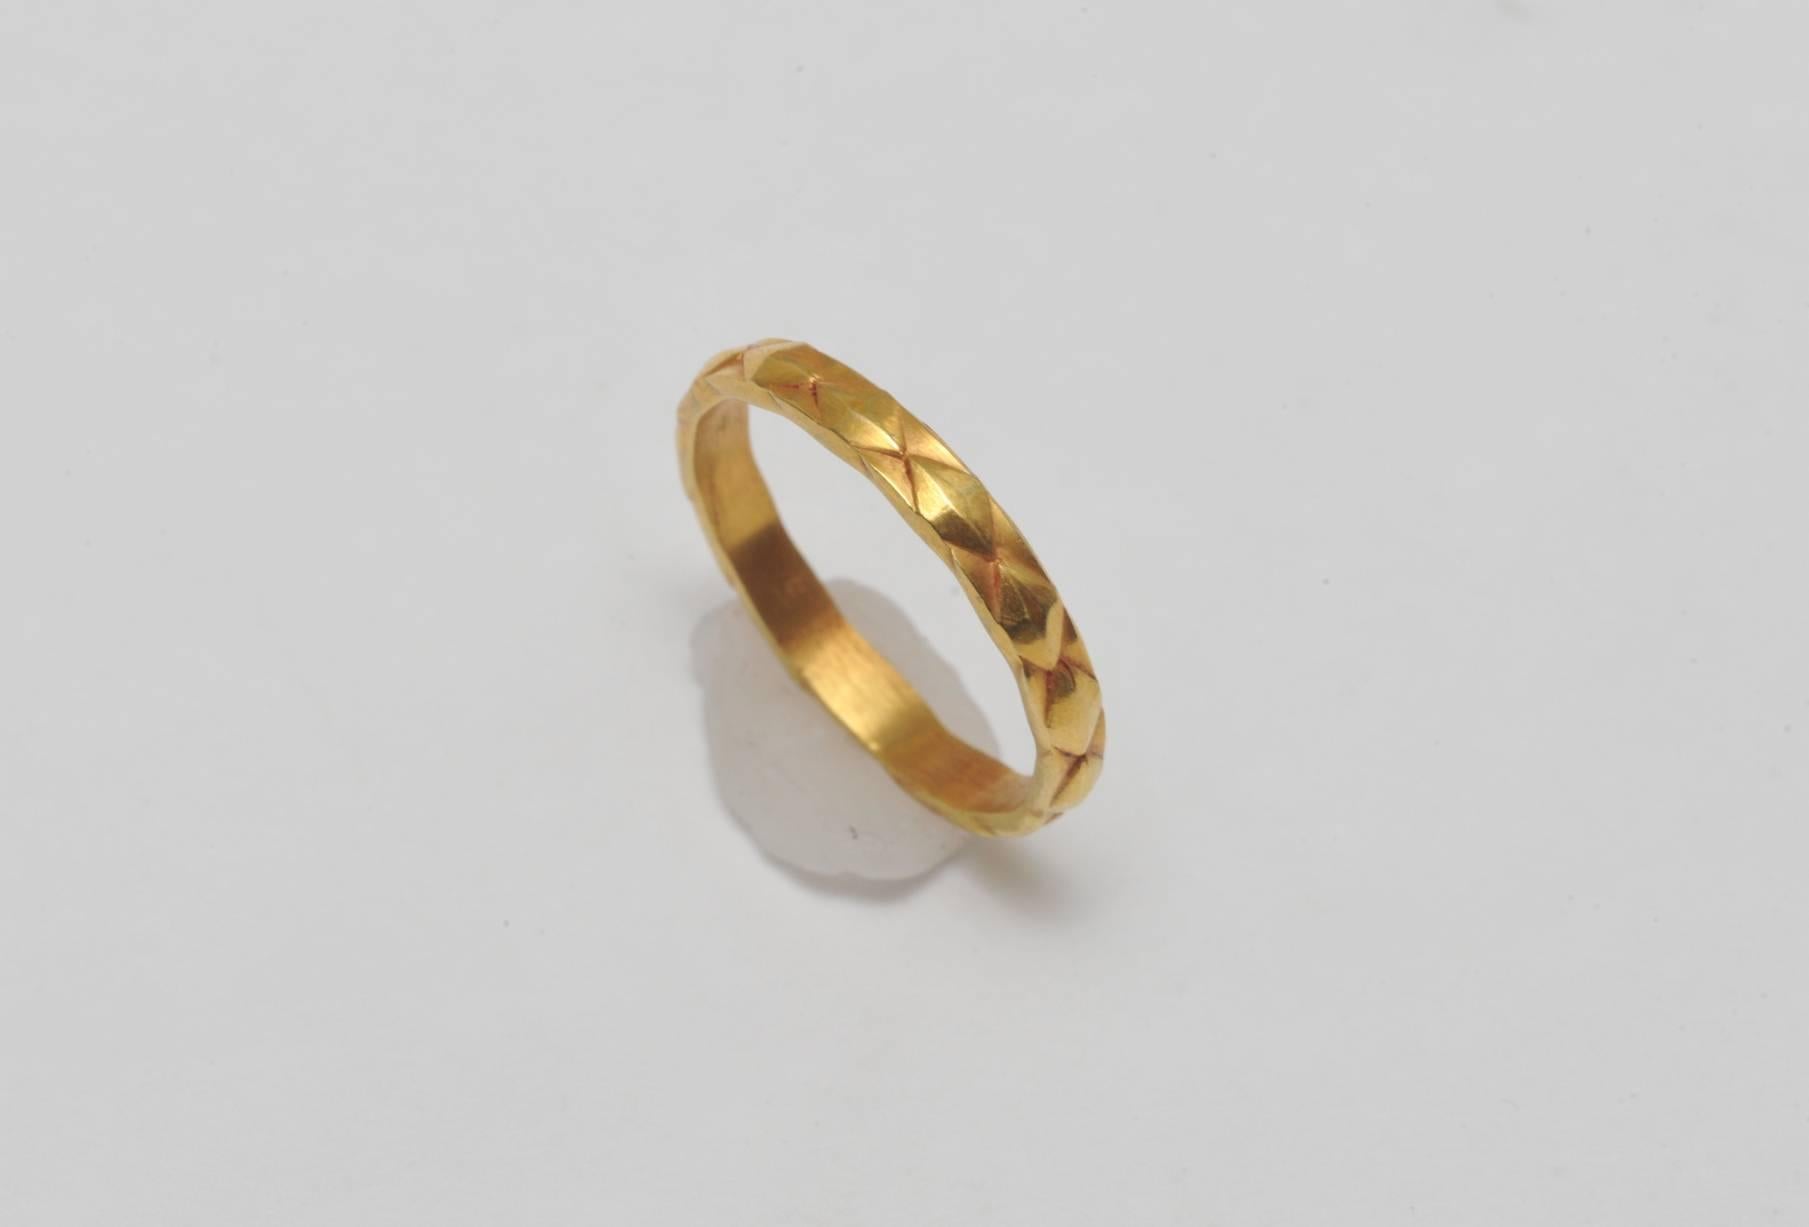 Ungewöhnliches Band aus 18 Karat Gold mit strukturierten, diamantförmigen Details rundherum.  Die Ringgröße liegt zwischen 5 3/4 und 6.  